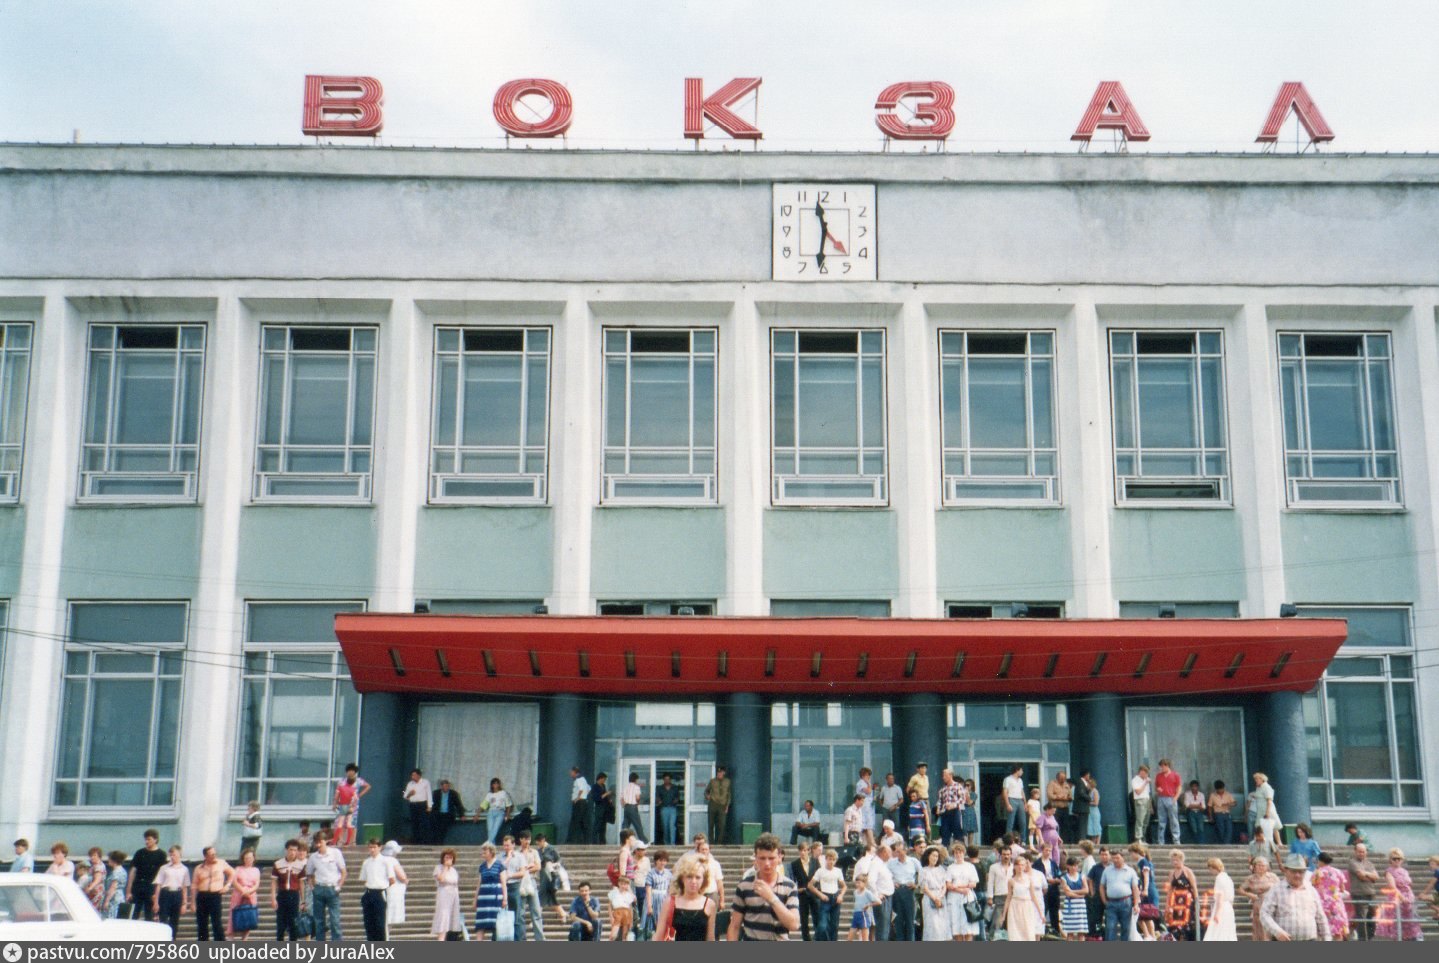 хабаровск вокзал старые